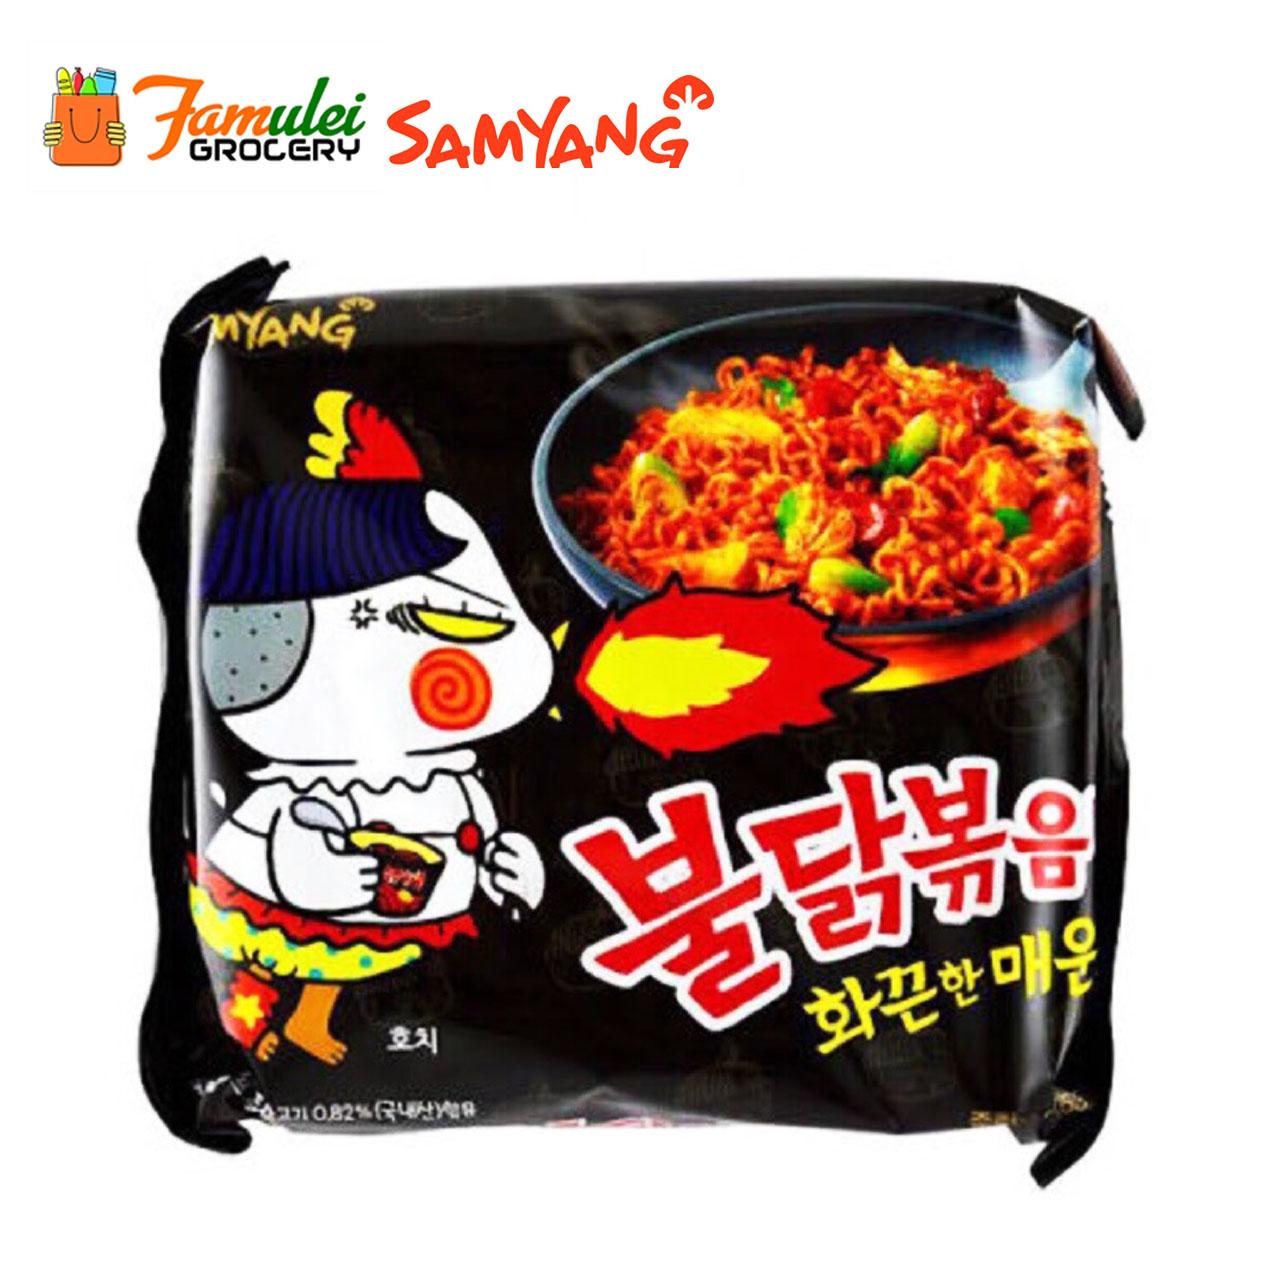 Лапша spicy. Samyang x2 рамен. Samyang Buldak 2x Spicy соус. Корейская лапша 2x Spicy. Instant Ramen Noodles Samyang лапша 2х.